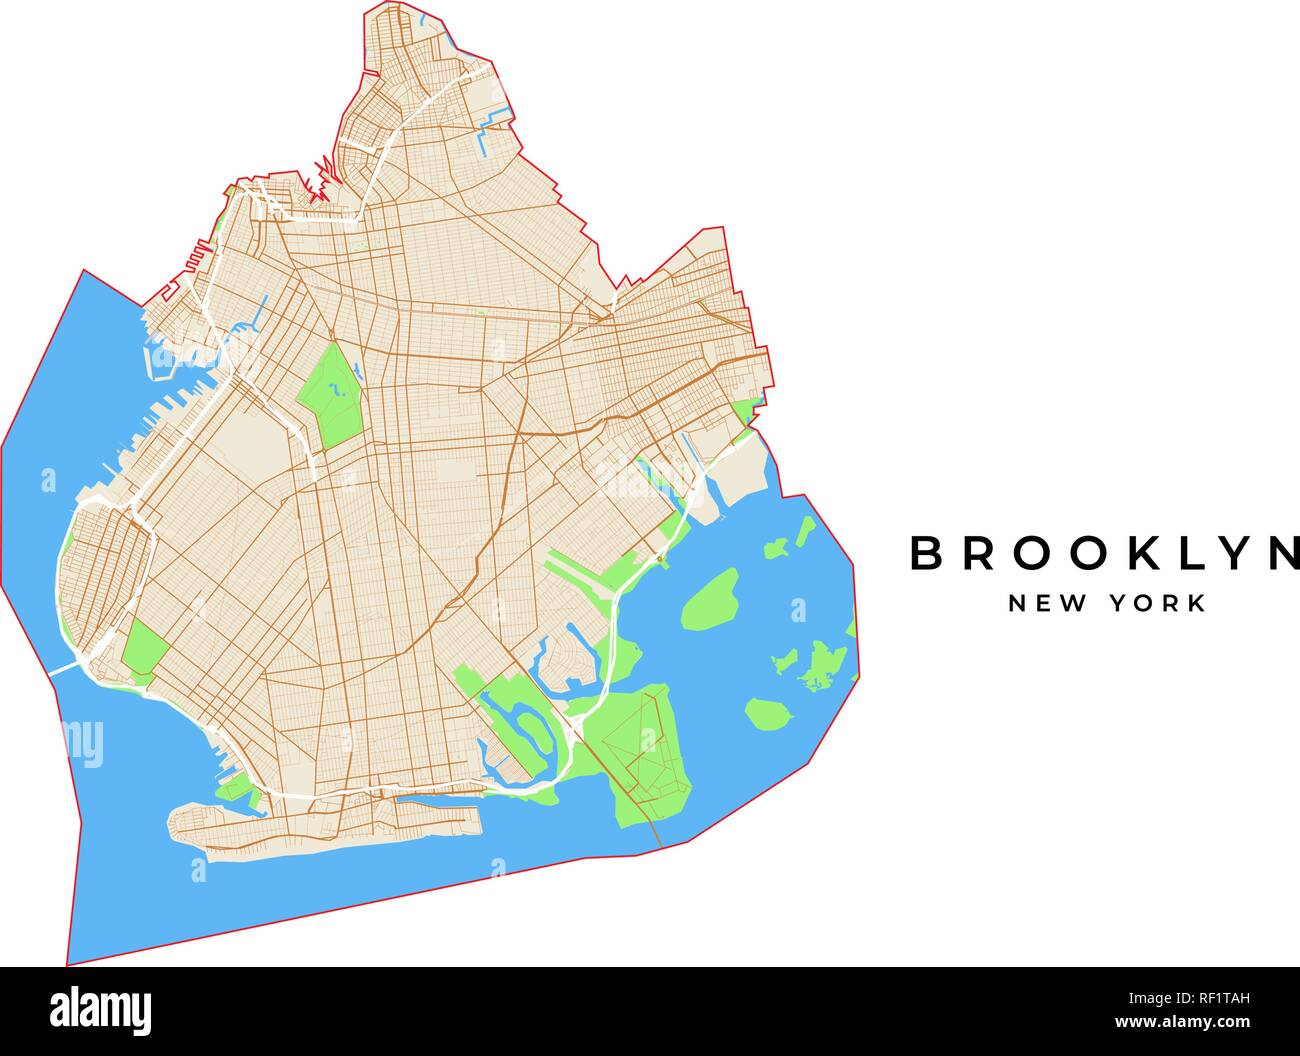 Mappa vettoriale di Brooklyn, New York, Stati Uniti d'America. Vari colori per strade, parchi, di acqua e di confine. Illustrazione Vettoriale